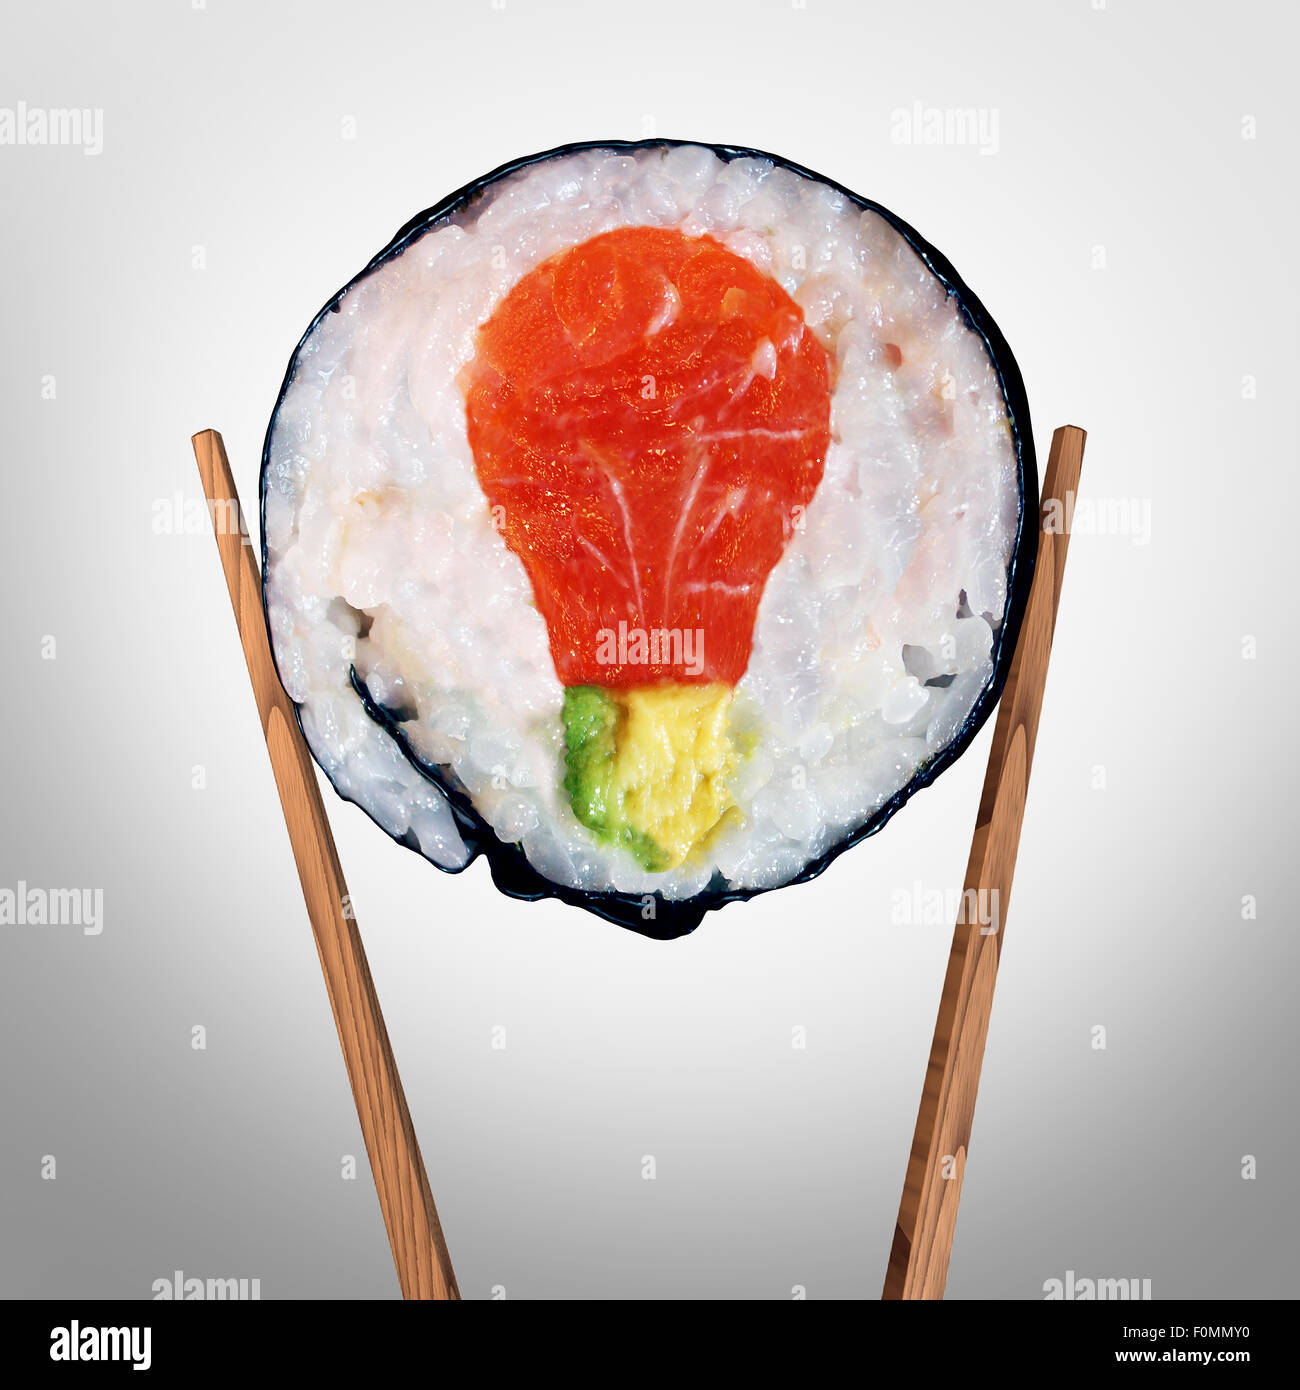 Sushi-Idee und japanisches Essenskonzept als ein Sushi Rollen mit rohen Lachs und Avocado, geformt wie eine Glühbirne, frische kreative asiatische Küche Lösungen darstellt und Kochen inspirieren. Stockfoto